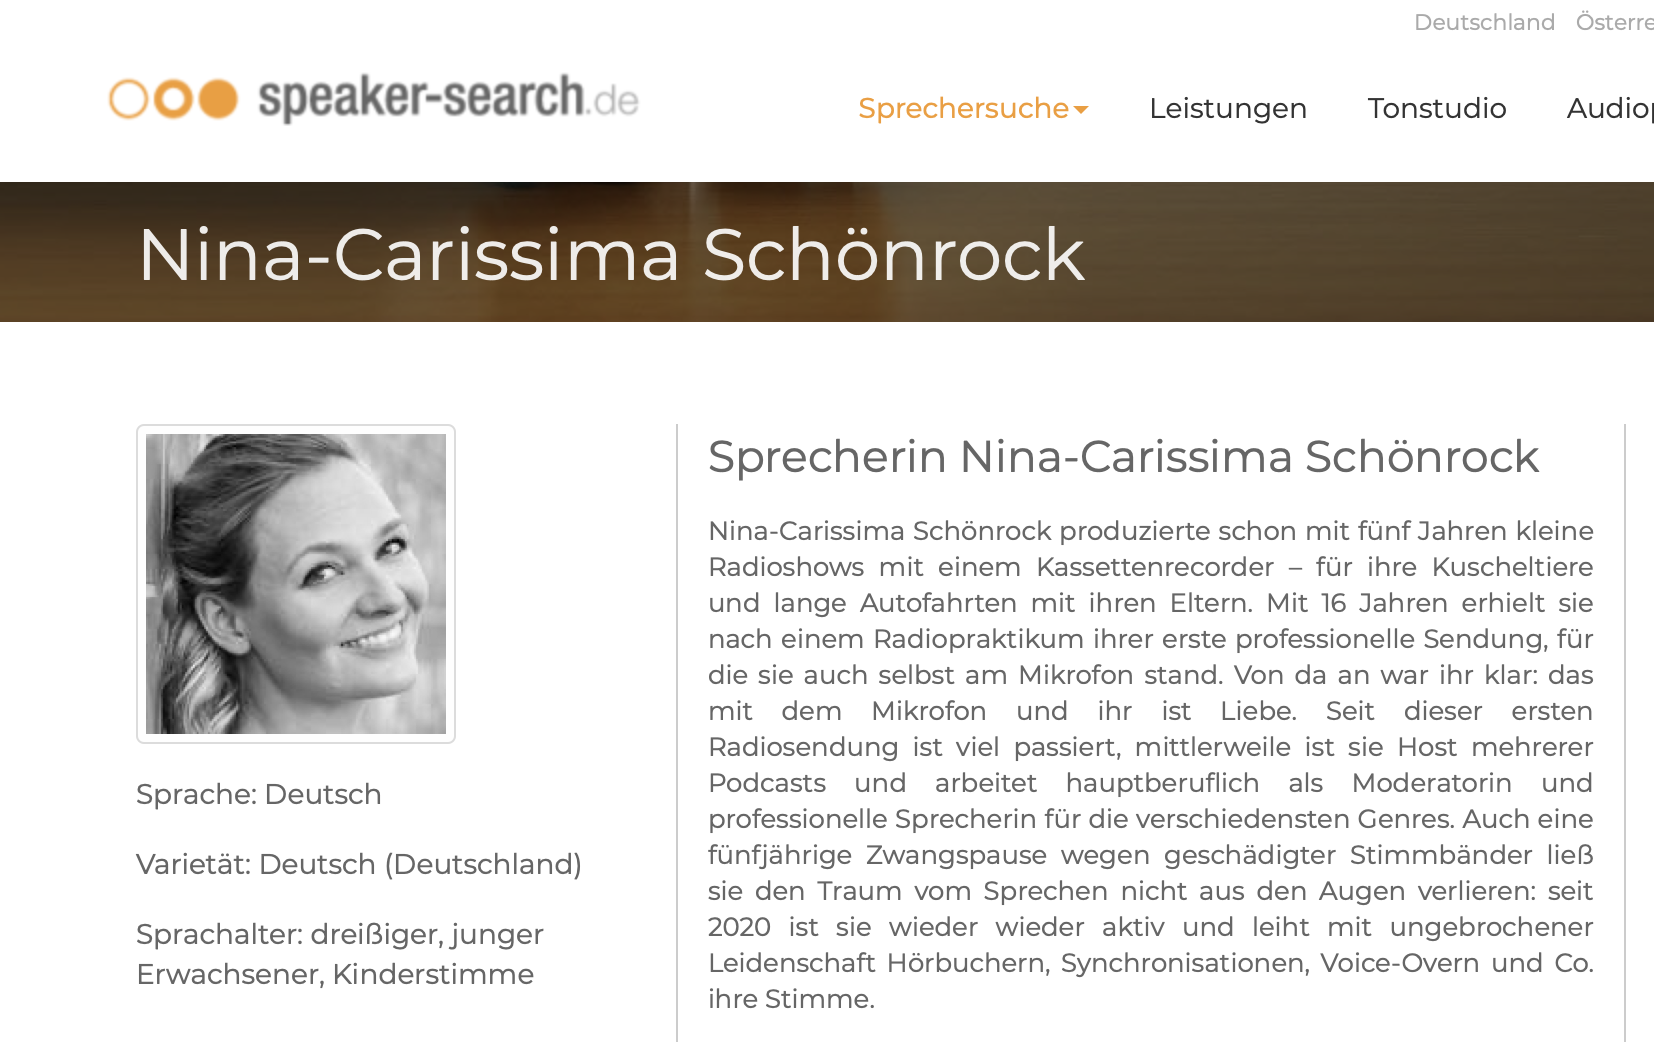 Neues Hörbuch von Nina-Carissima Schönrock erscheint am 15. März 2021!